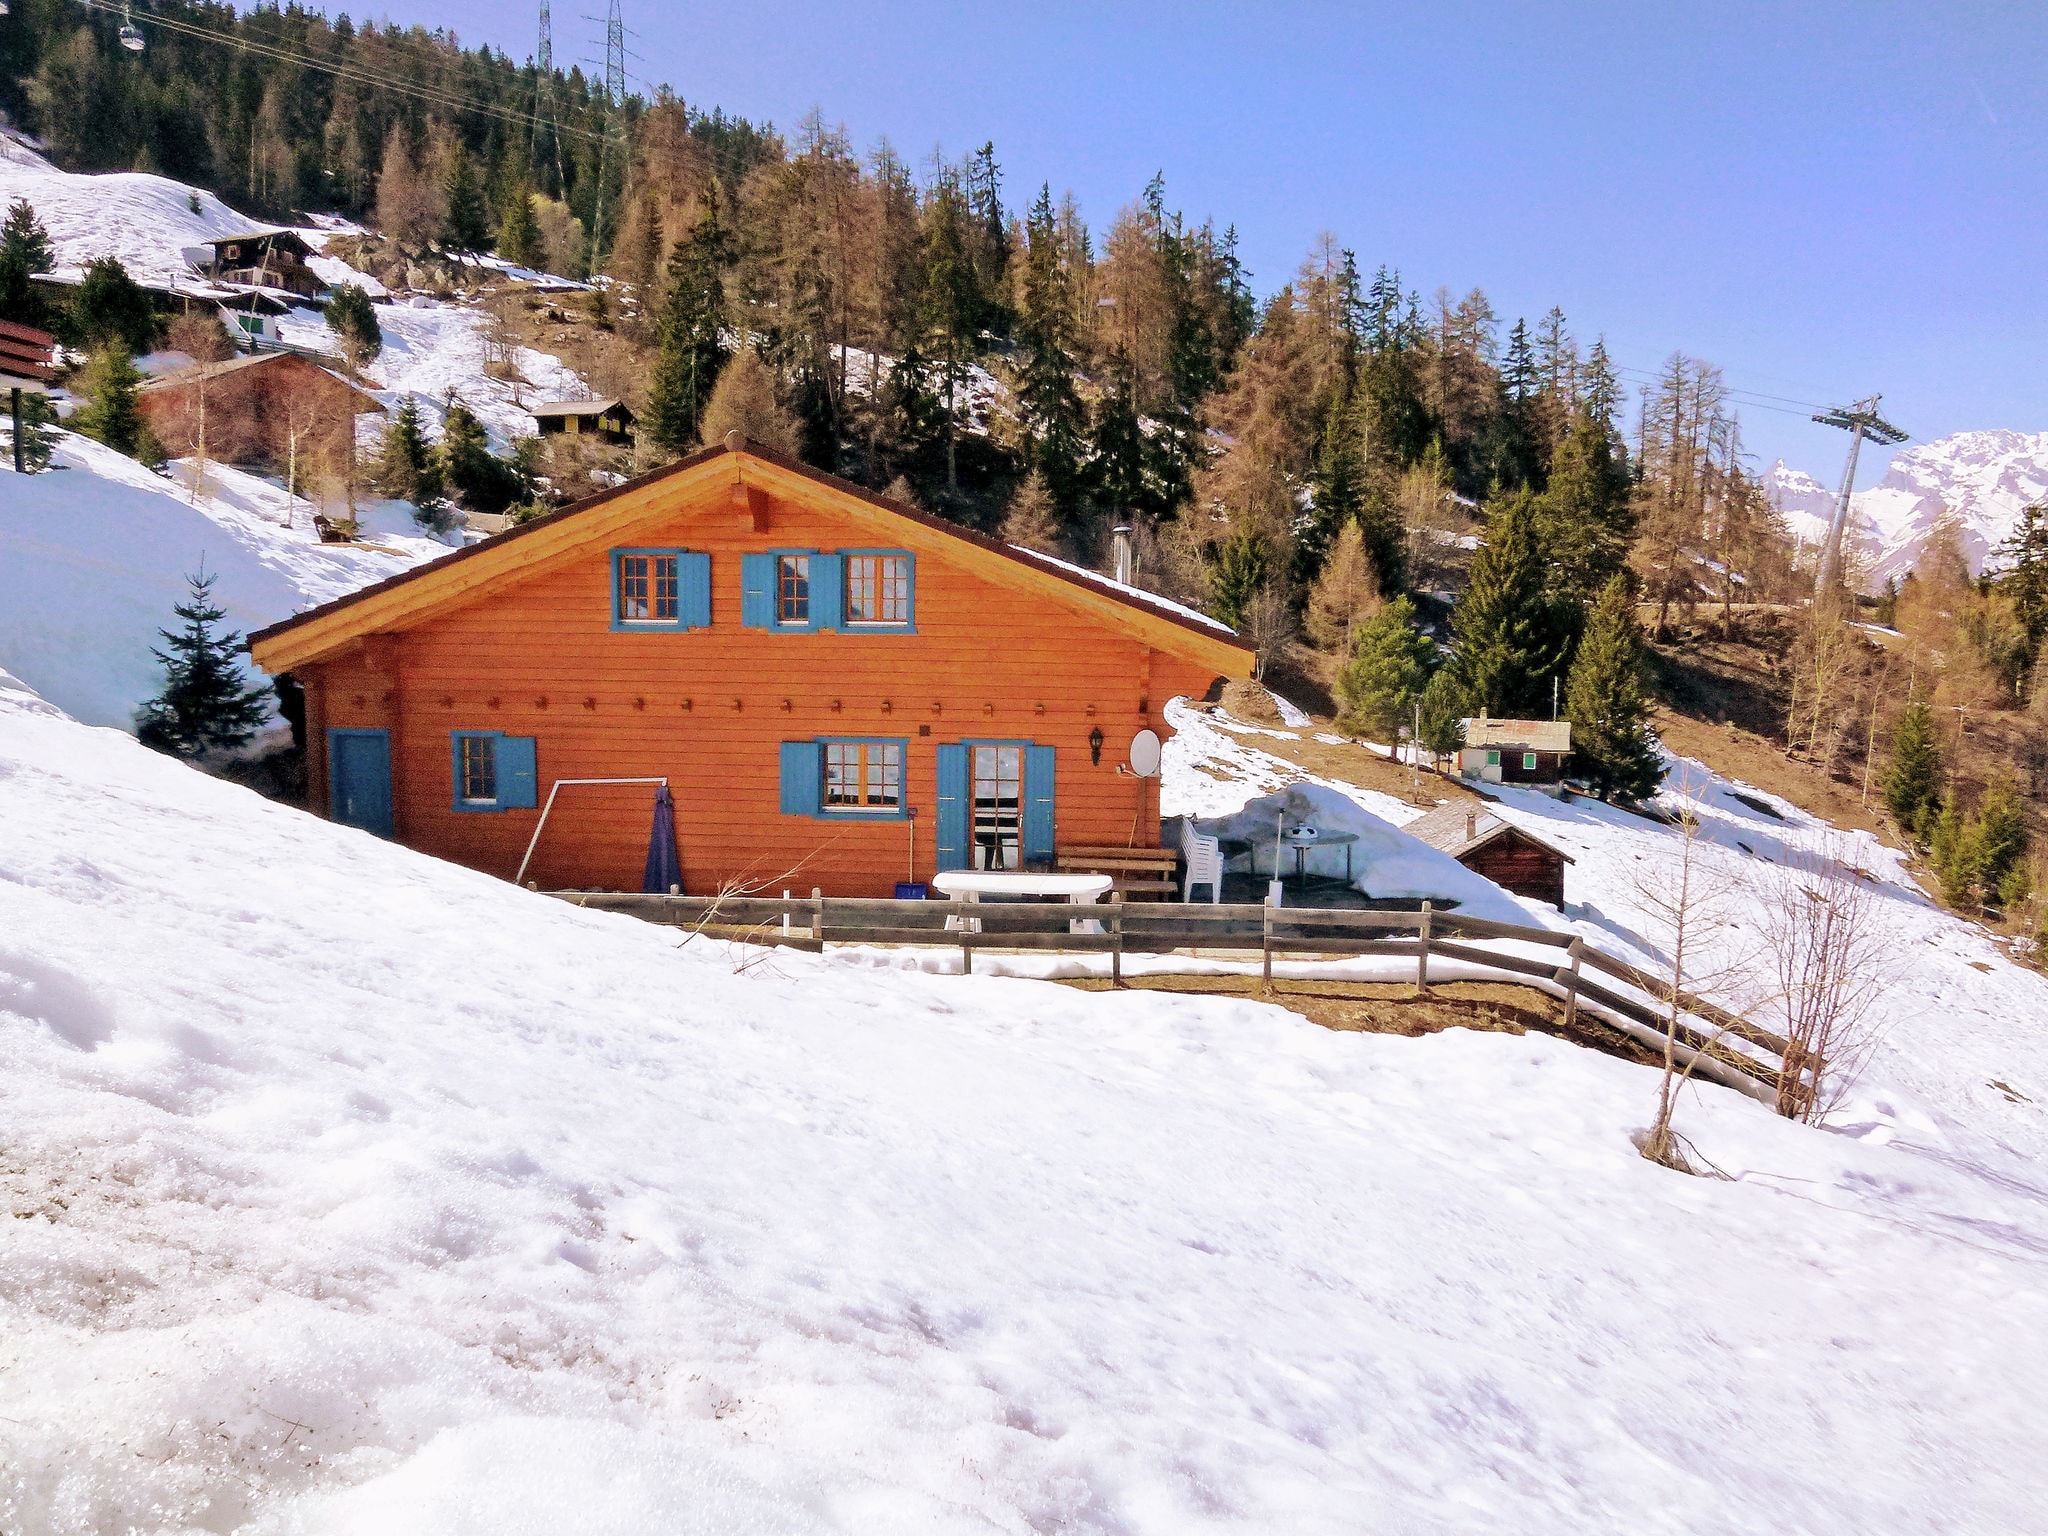 Ferienhaus Alpina